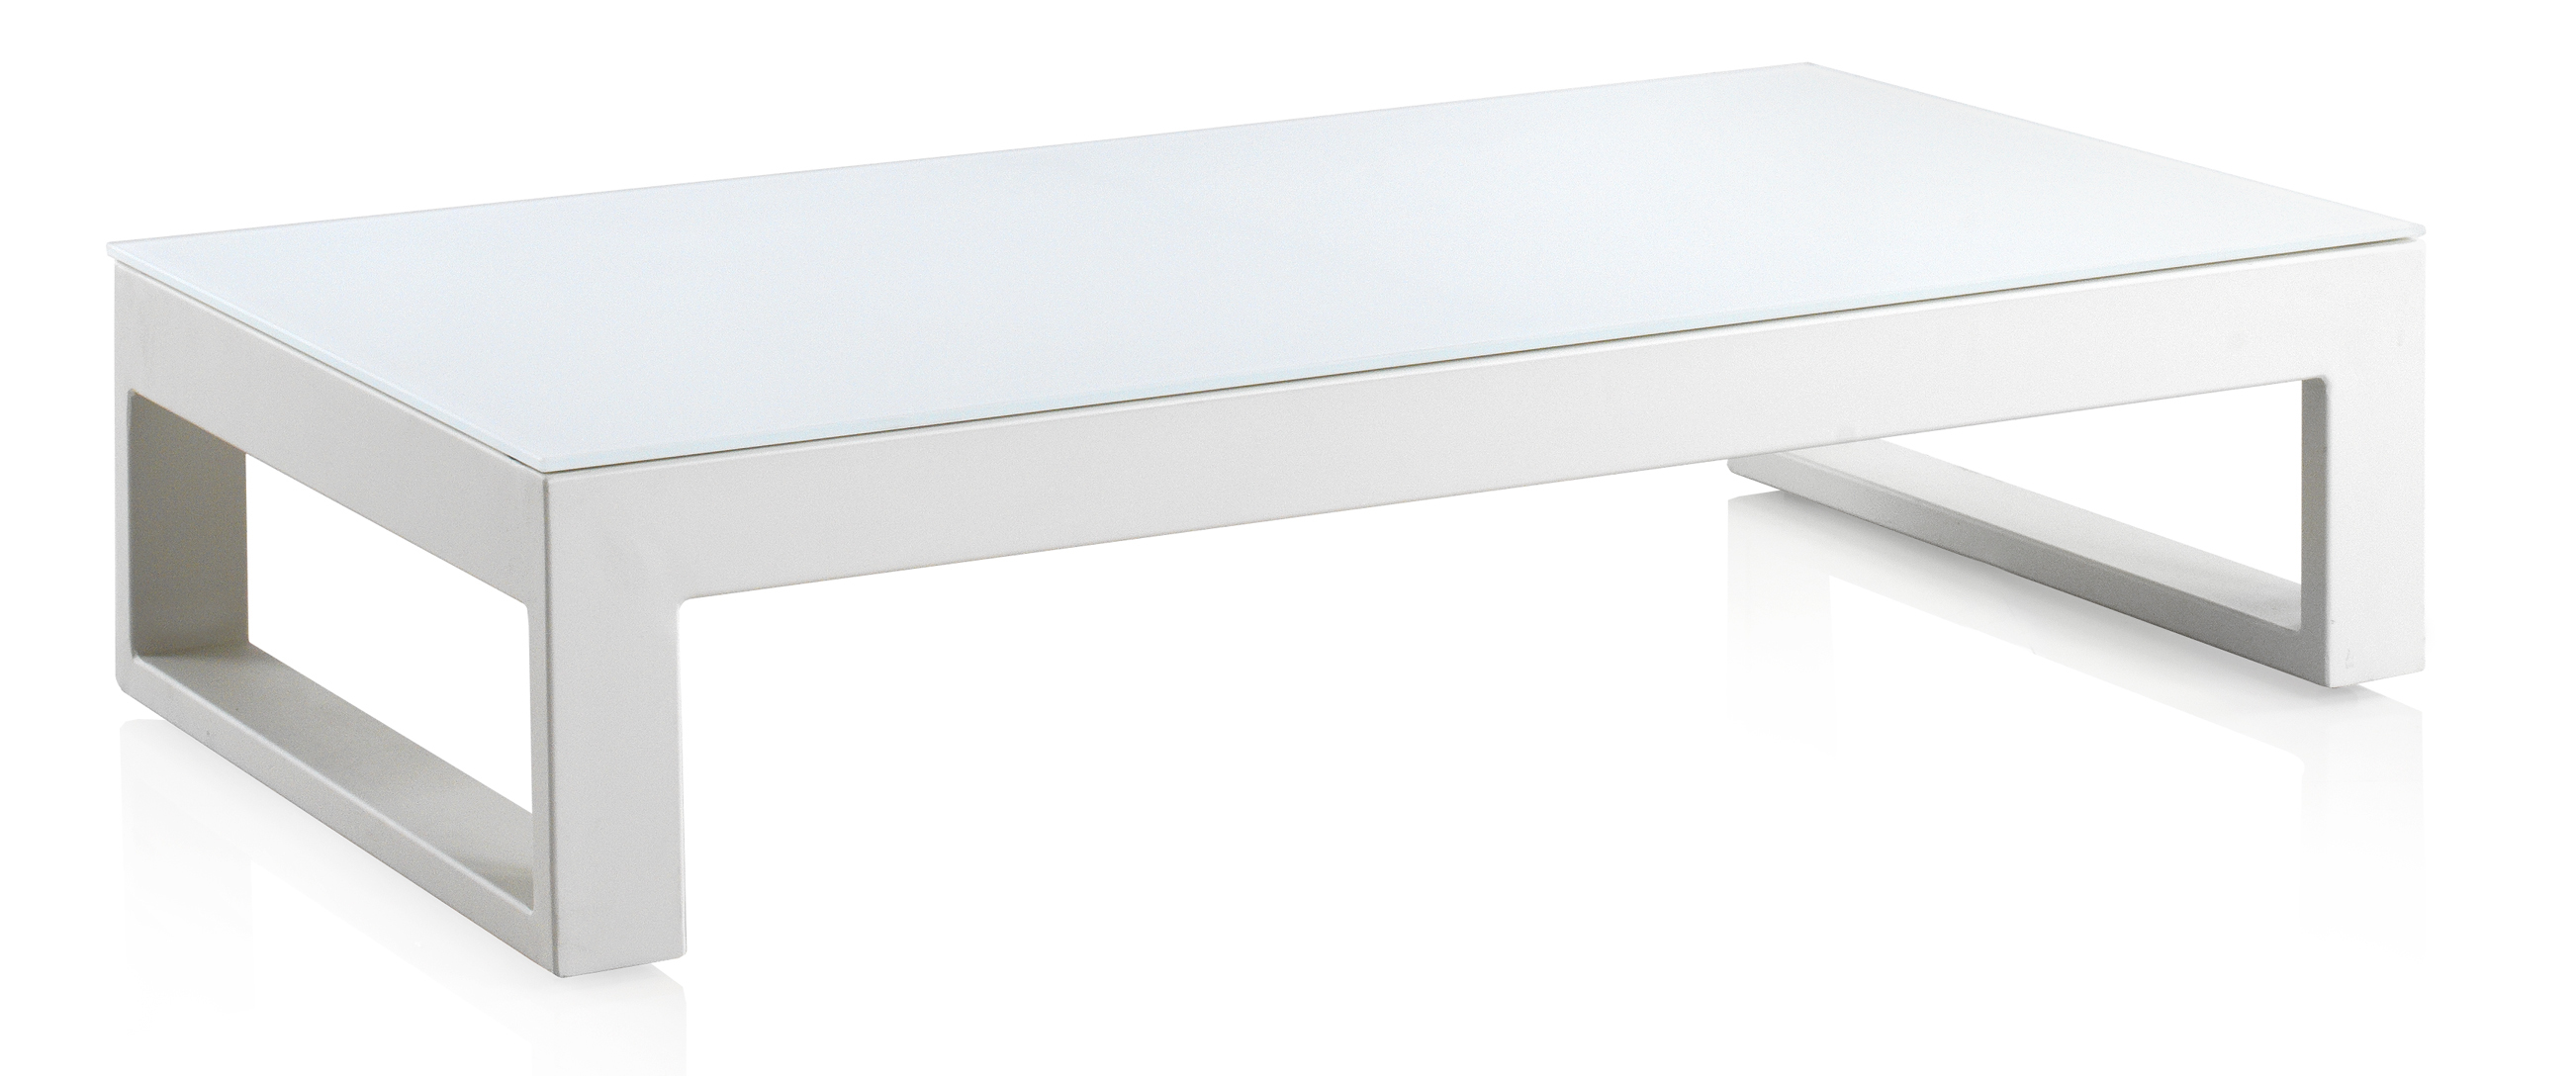 Table basse en aluminium et verre trempé blanc 130x70 cm